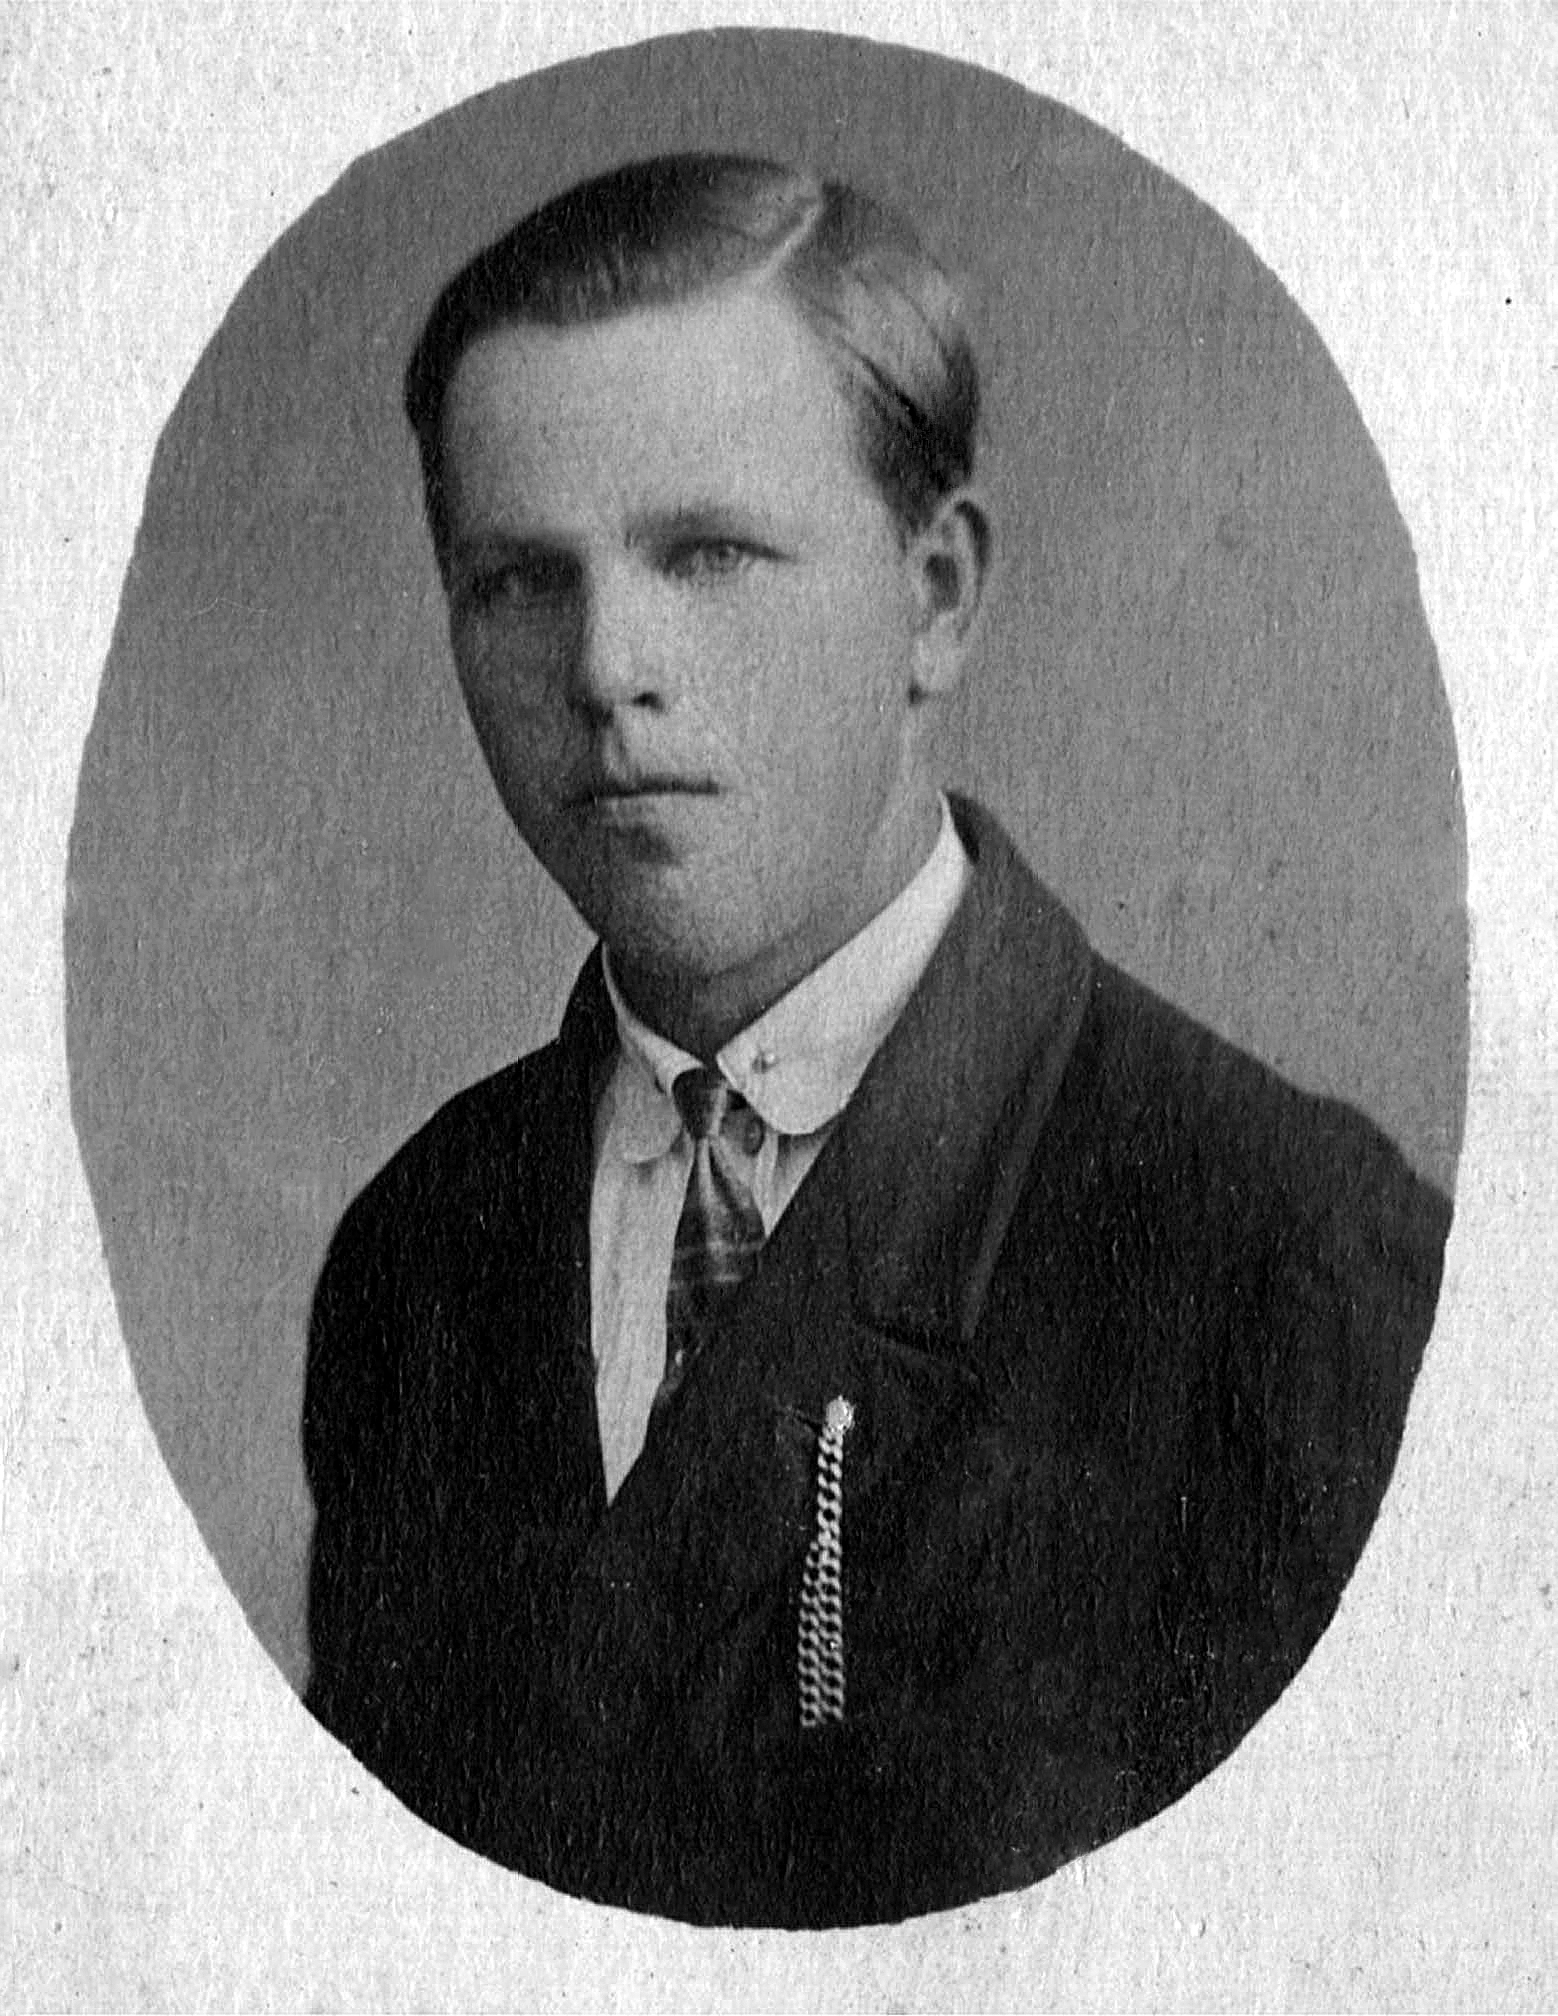 Лебедев Василий Иванович фото 1931 года из семейного архива Назаренковой Т.Н.